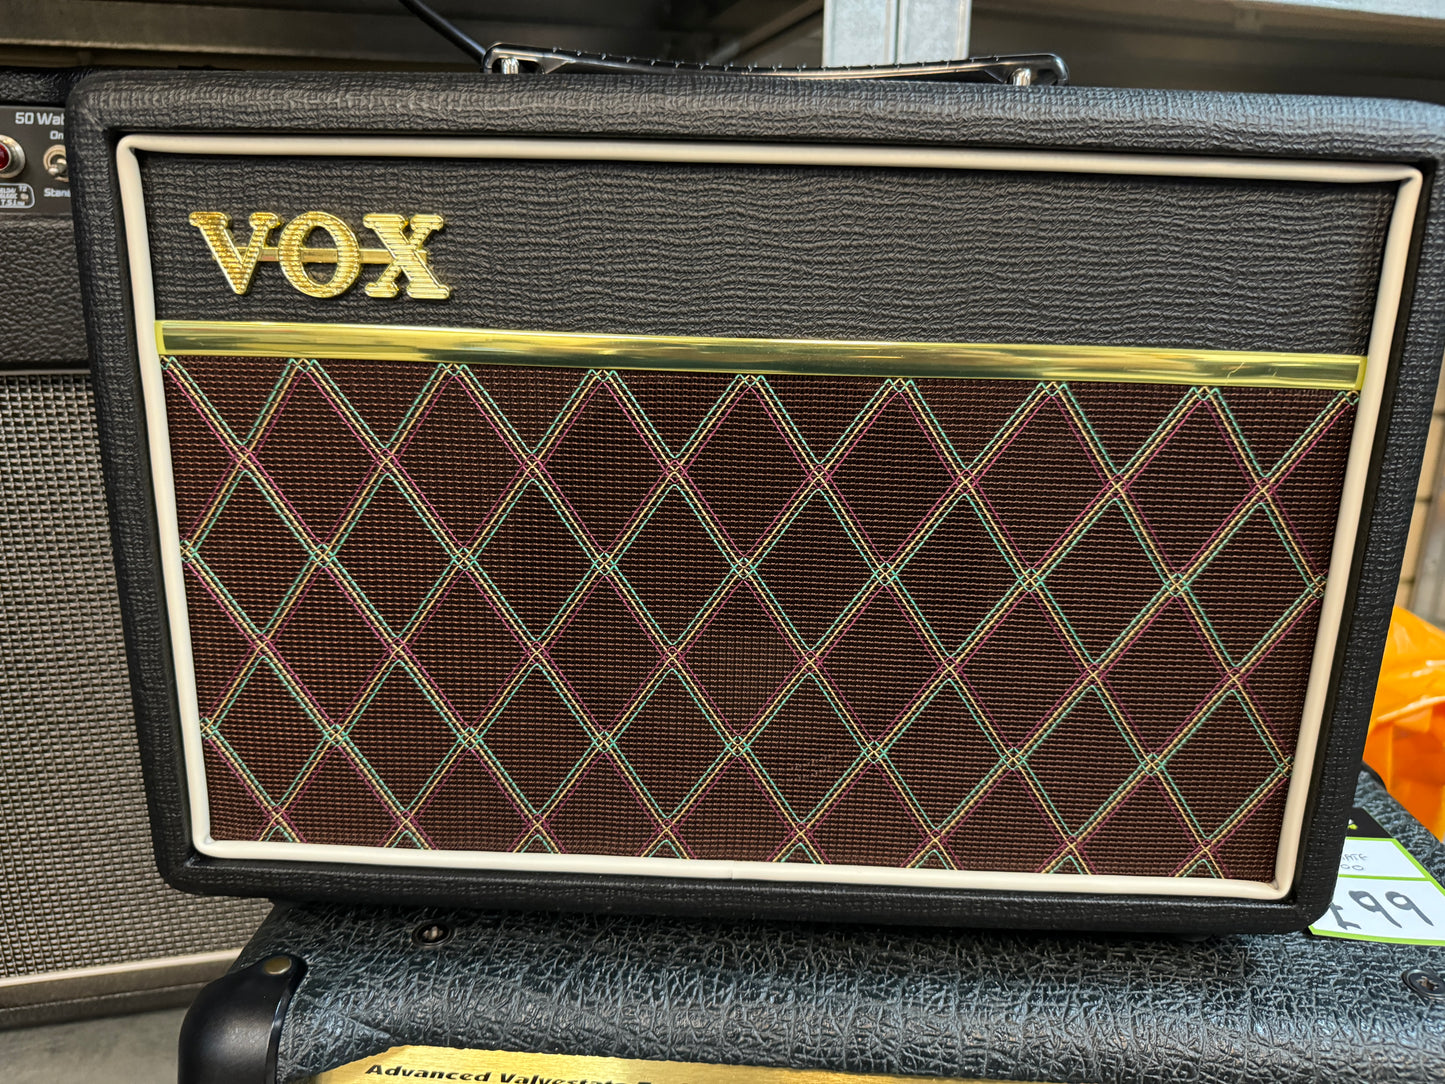 Vox Pathfinder 10w Guitar practice amplifier